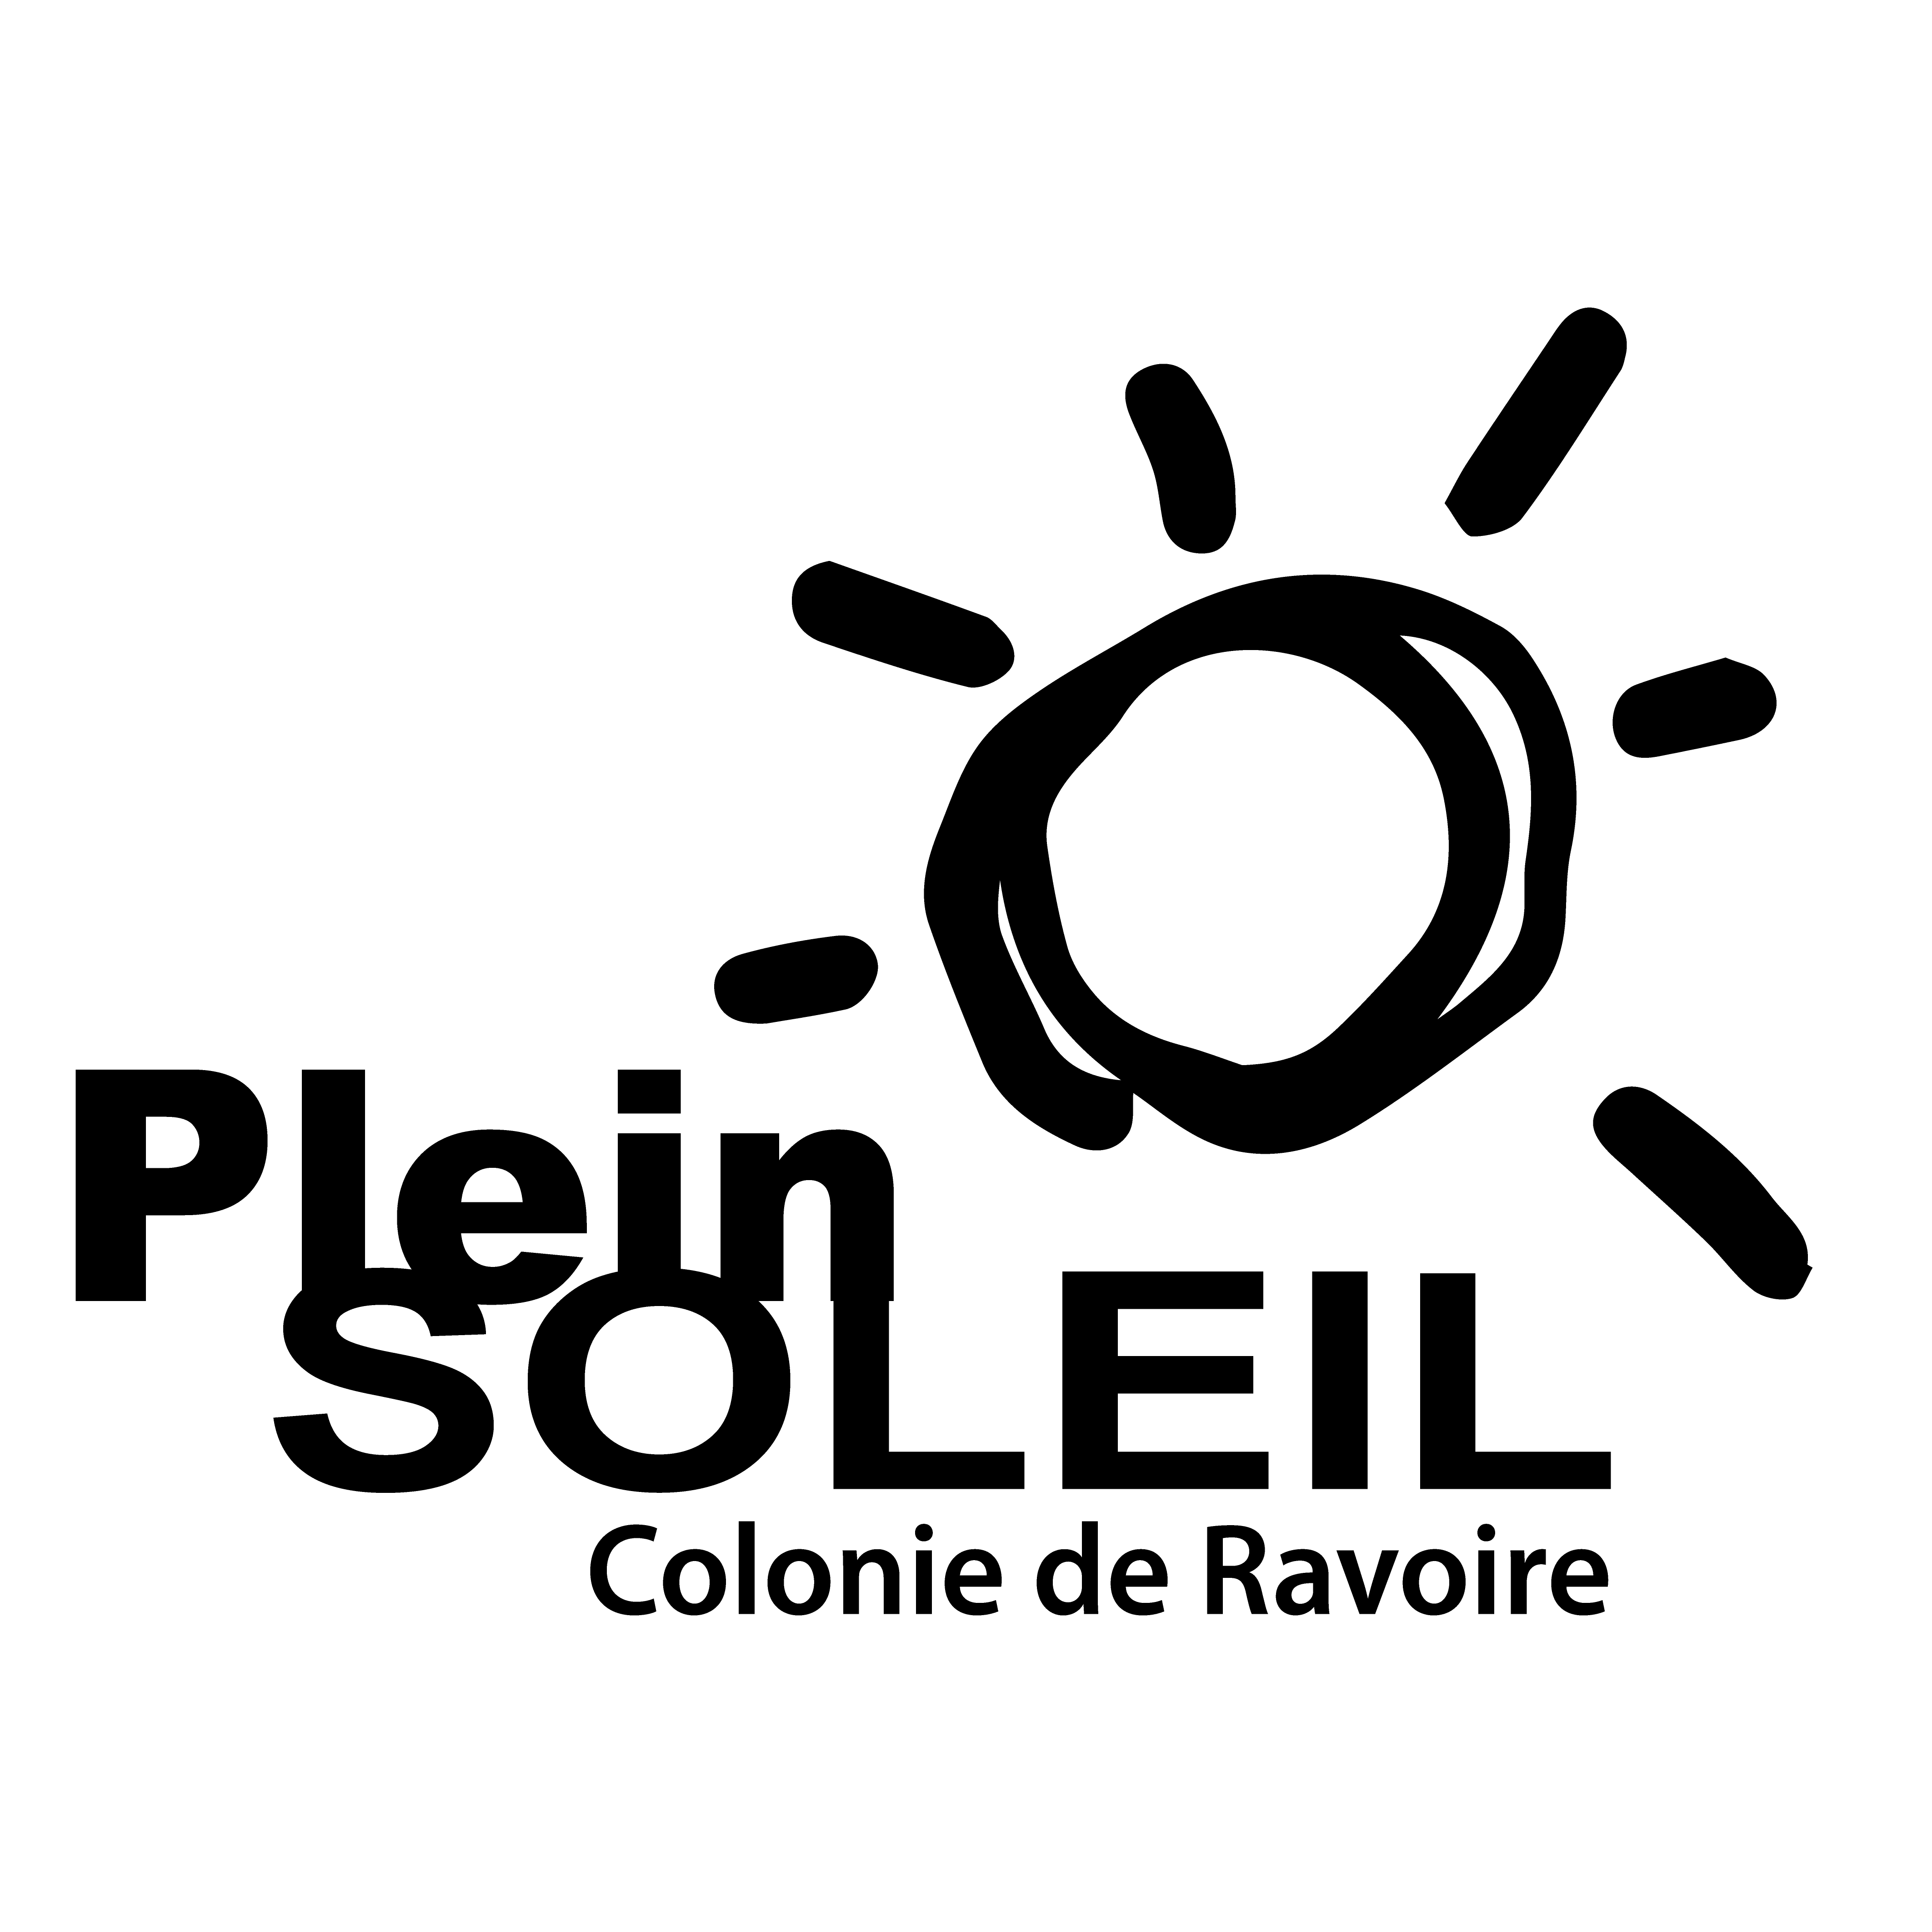 Colonie de Ravoire Logo